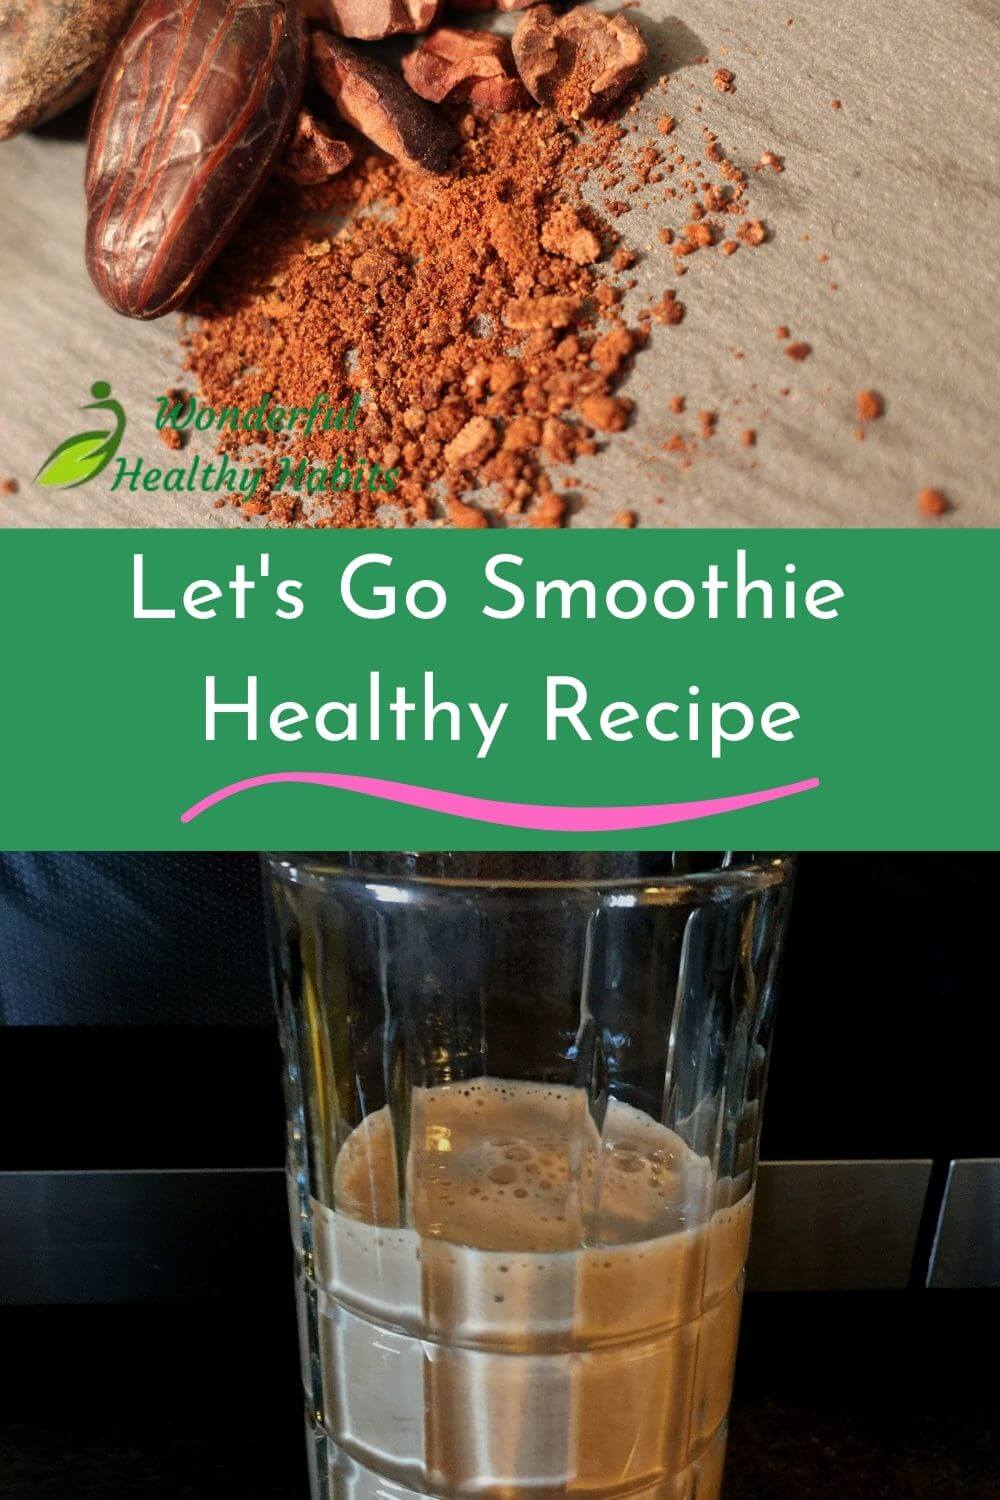 Let's Go Smoothie Healthy Recipe